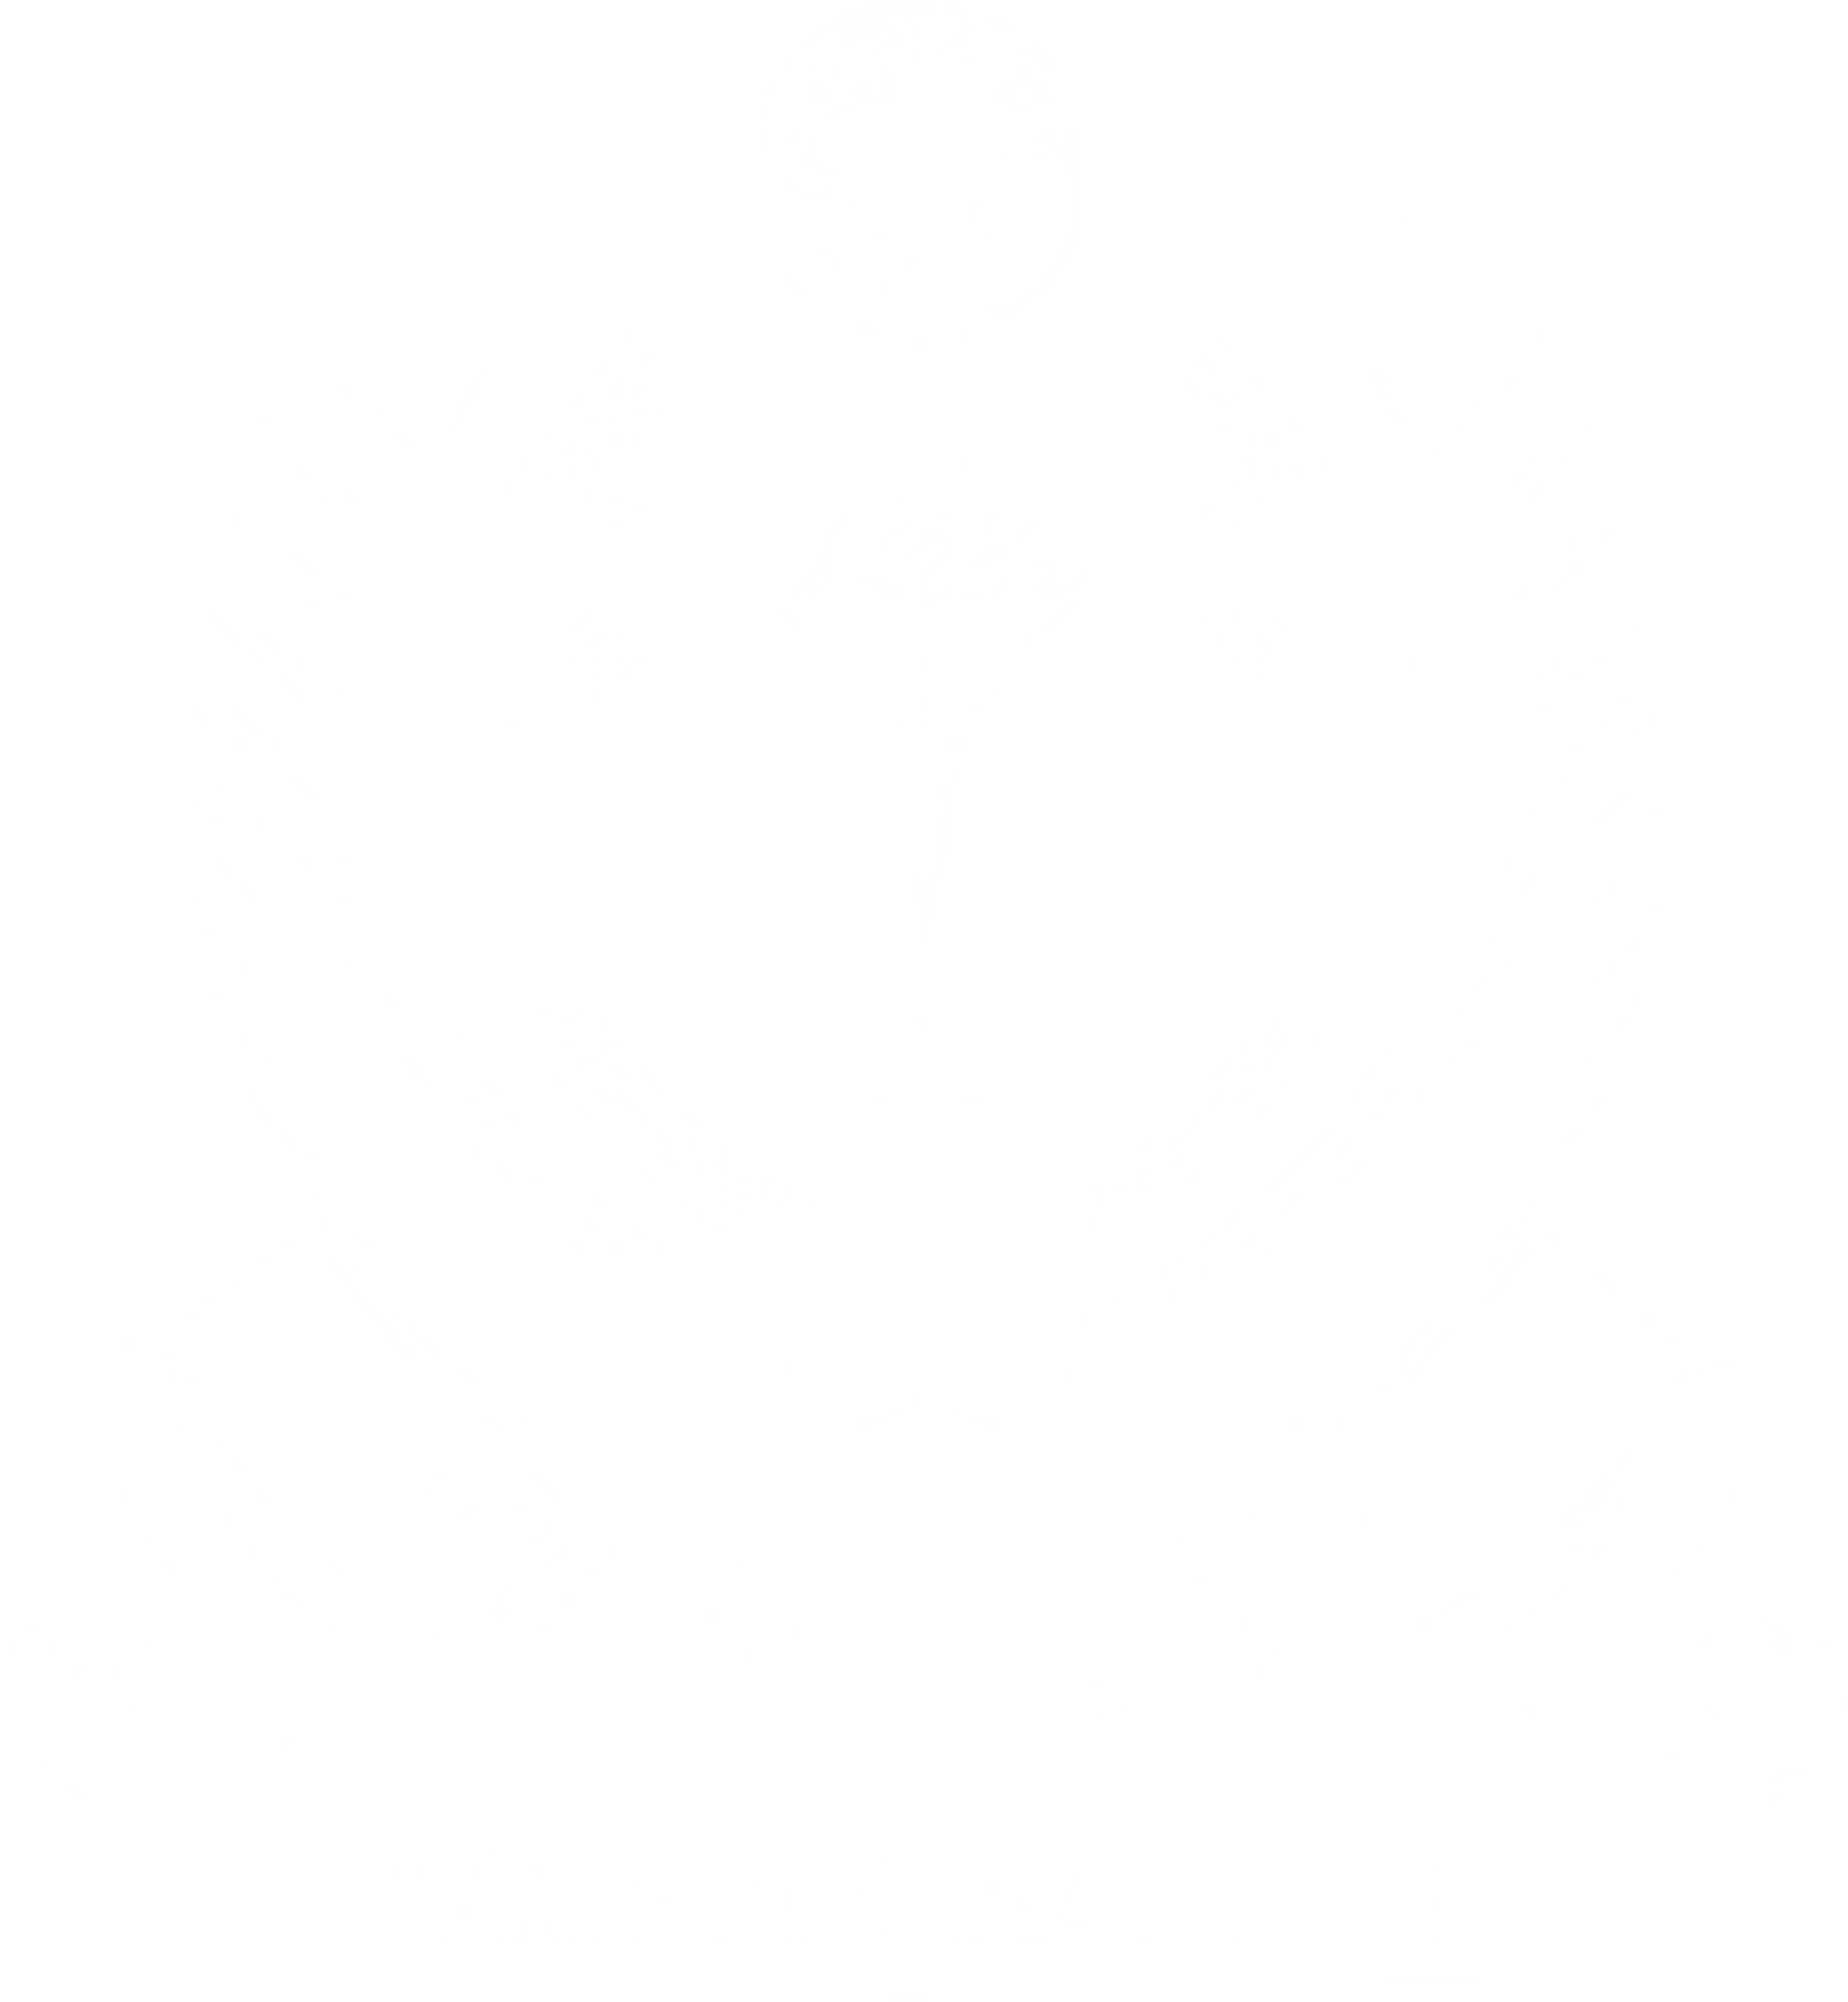 Camblish Training Institute